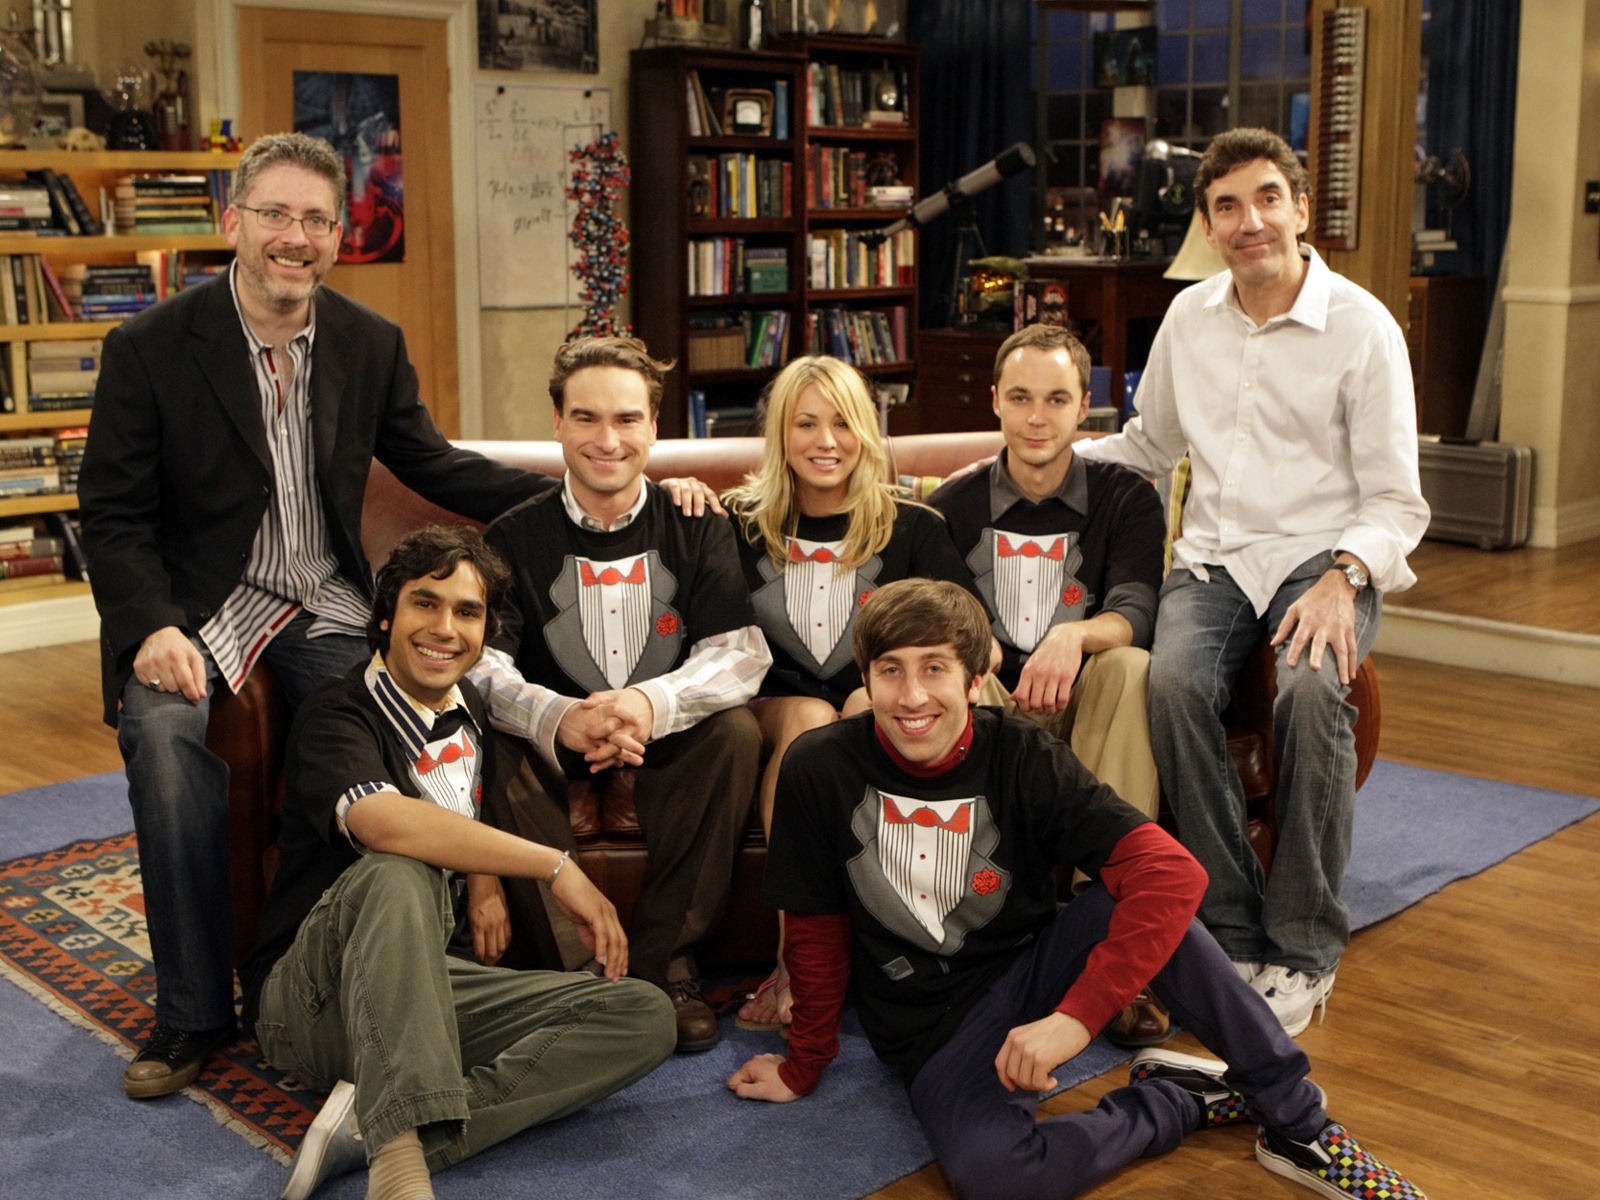 The Big Bang Theory 生活大爆炸 电视剧高清壁纸20 - 1600x1200